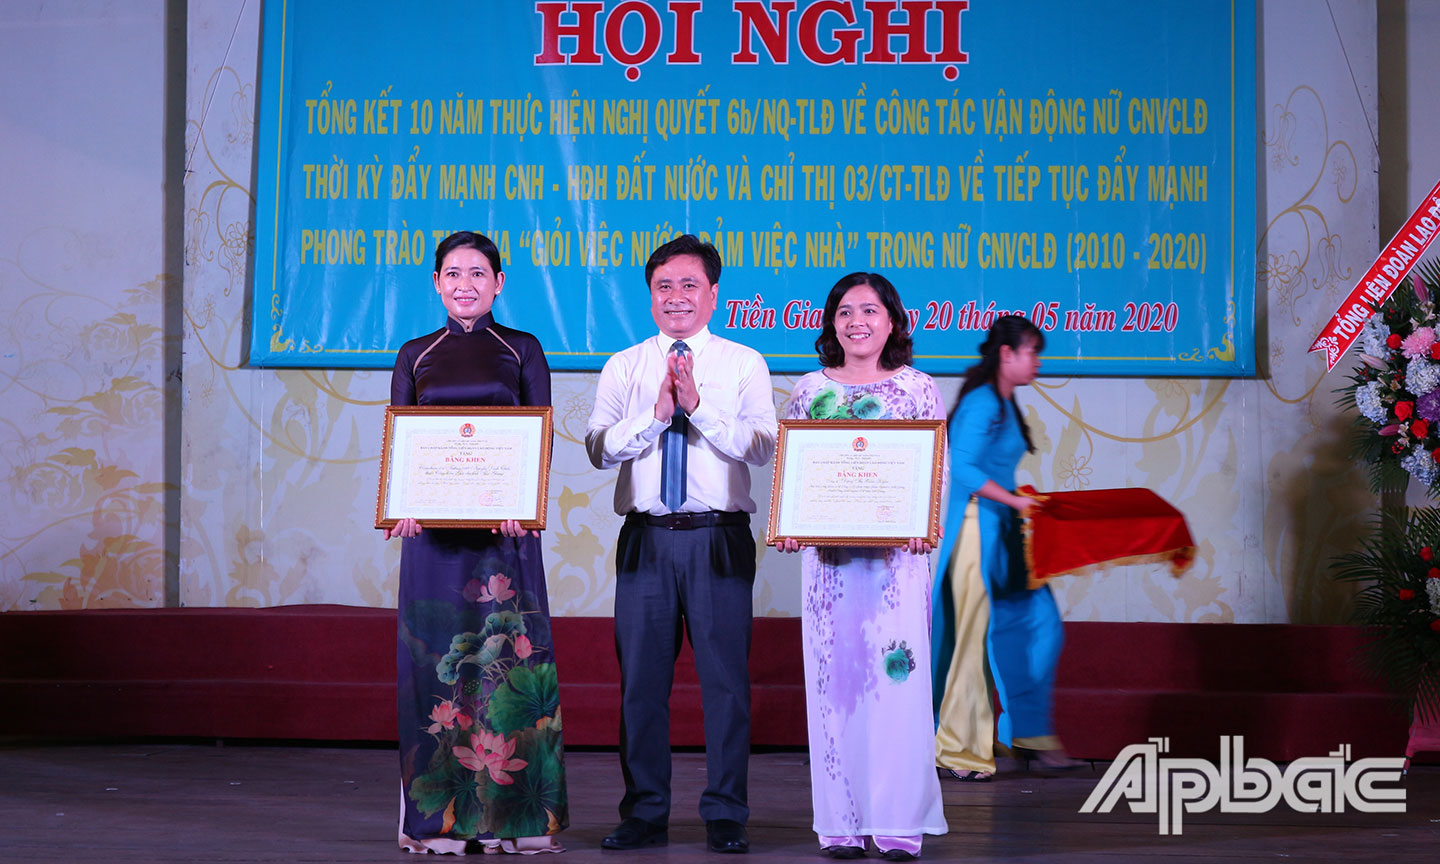 Cá nhân, tập thể nhận Bằng khen của Tổng LĐLĐ Việt Nam vì có thành tích xuất sắc trong công tác vận động nữ CNVCLĐ và phong trào thi đua Giỏi việc nước, đảm việc nhà giai đoạn 2010 - 2020.